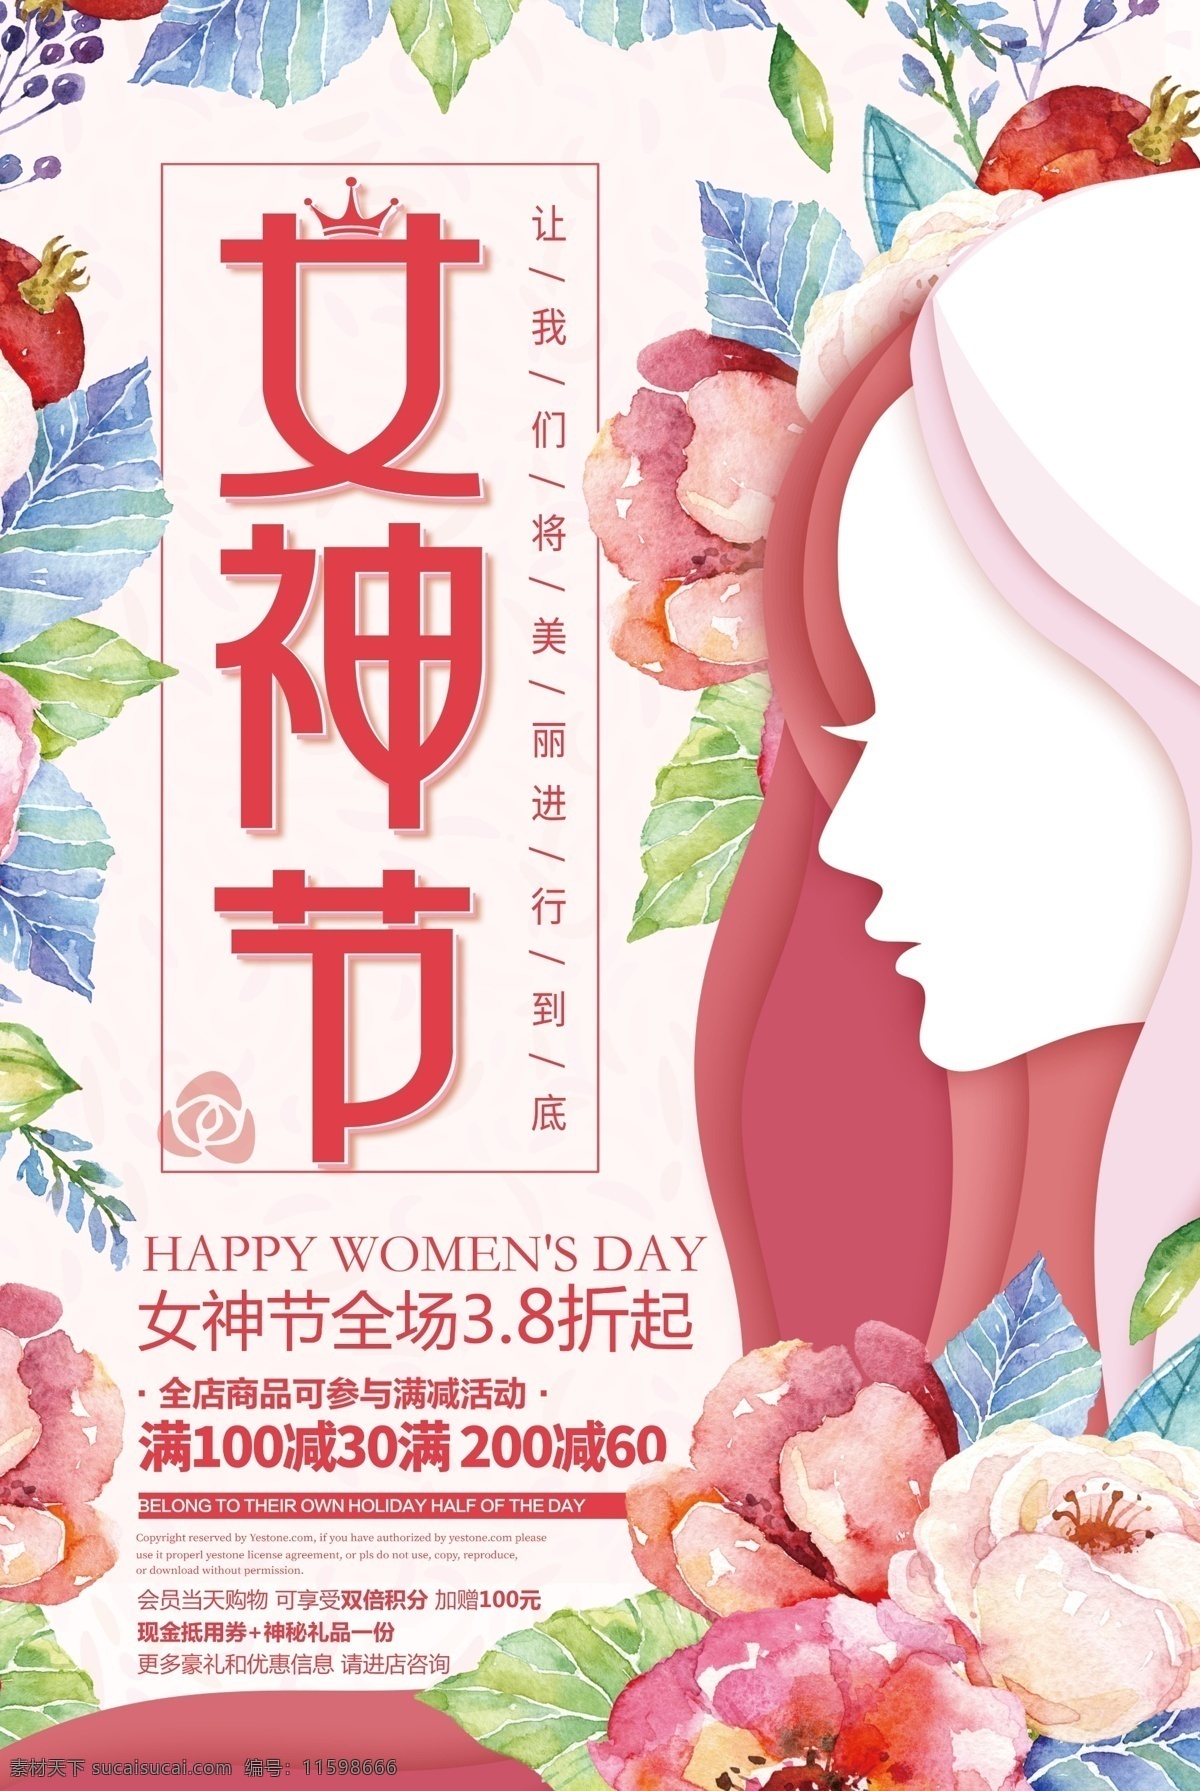 浪漫 清新 三八妇女节 活动 海报 女神 花朵 美丽 满减 全程3.8折